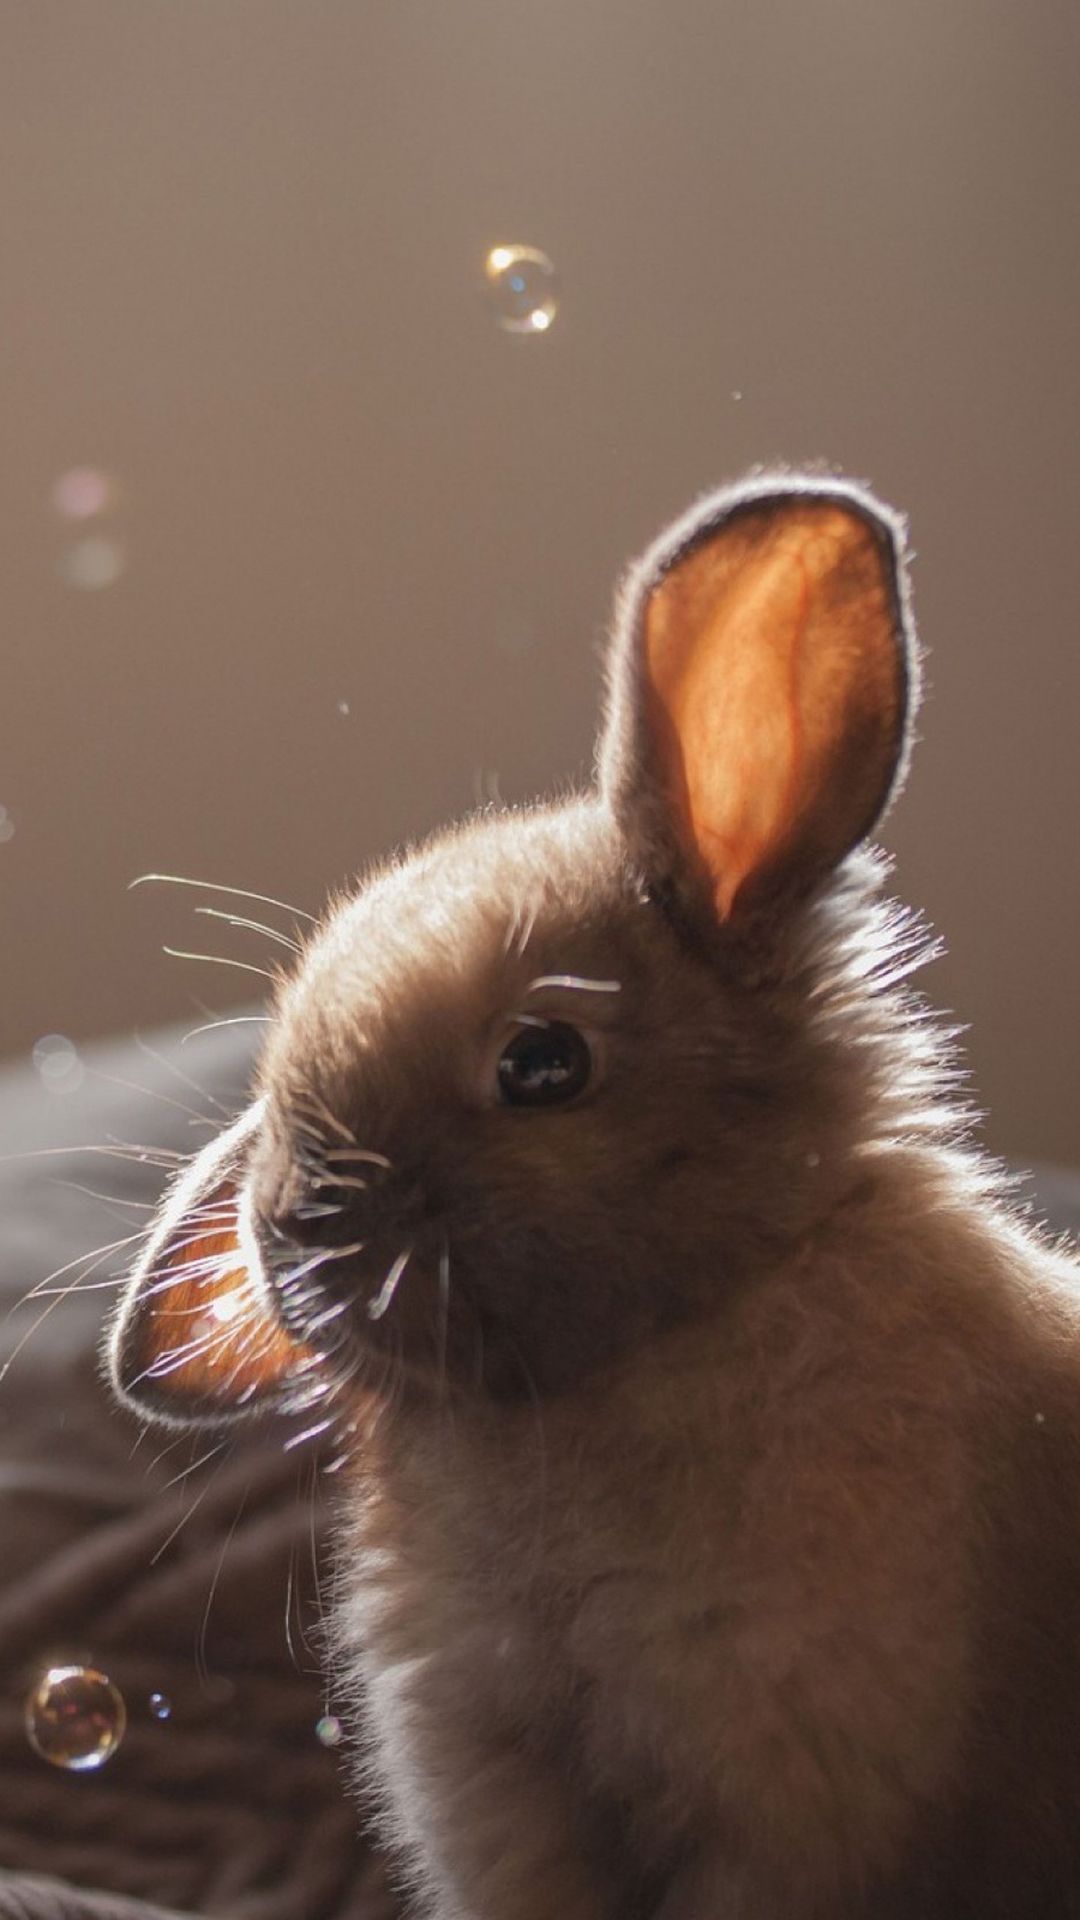 نقش و نگاری زیبا از بچه خرگوش با حباب های در اطرافش